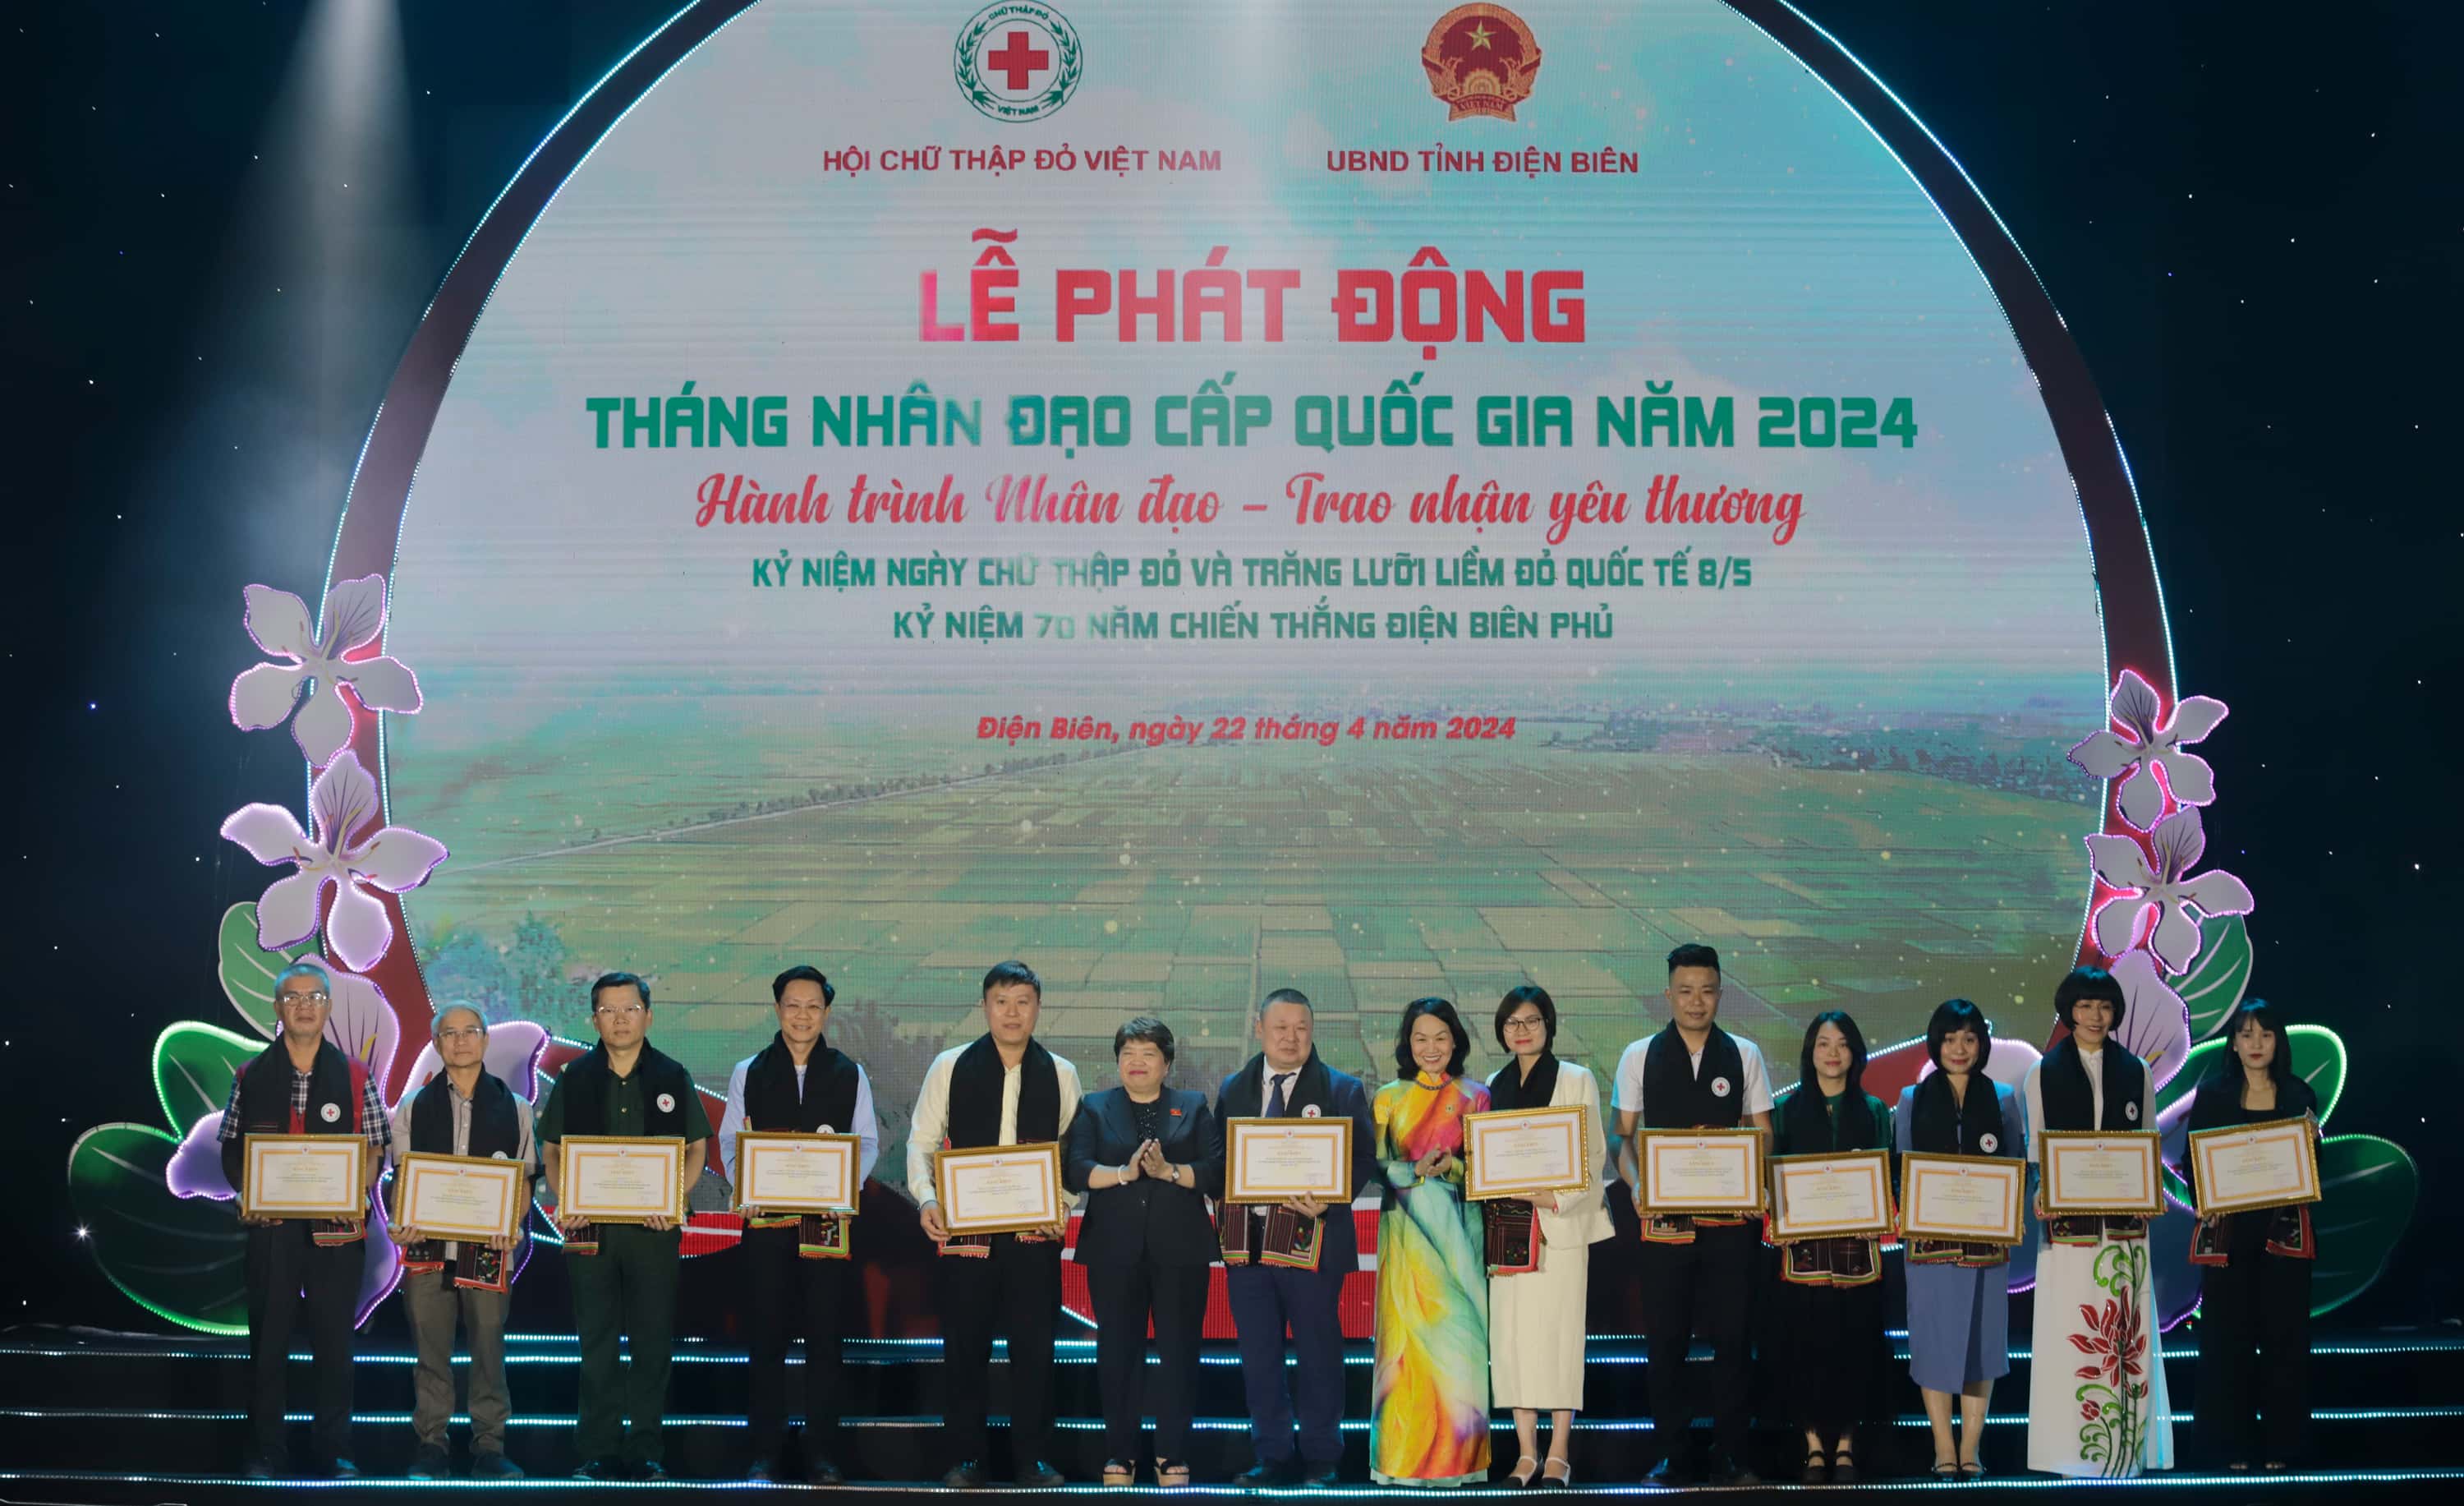 Đại diện THACO, ông Phạm Hữu Khánh – Giám đốc THACO AUTO Điện Biên (đứng thứ 5, từ trái sang) nhận quà lưu niệm và bằng khen của Trung ương Hội Chữ thập đỏ Việt Nam